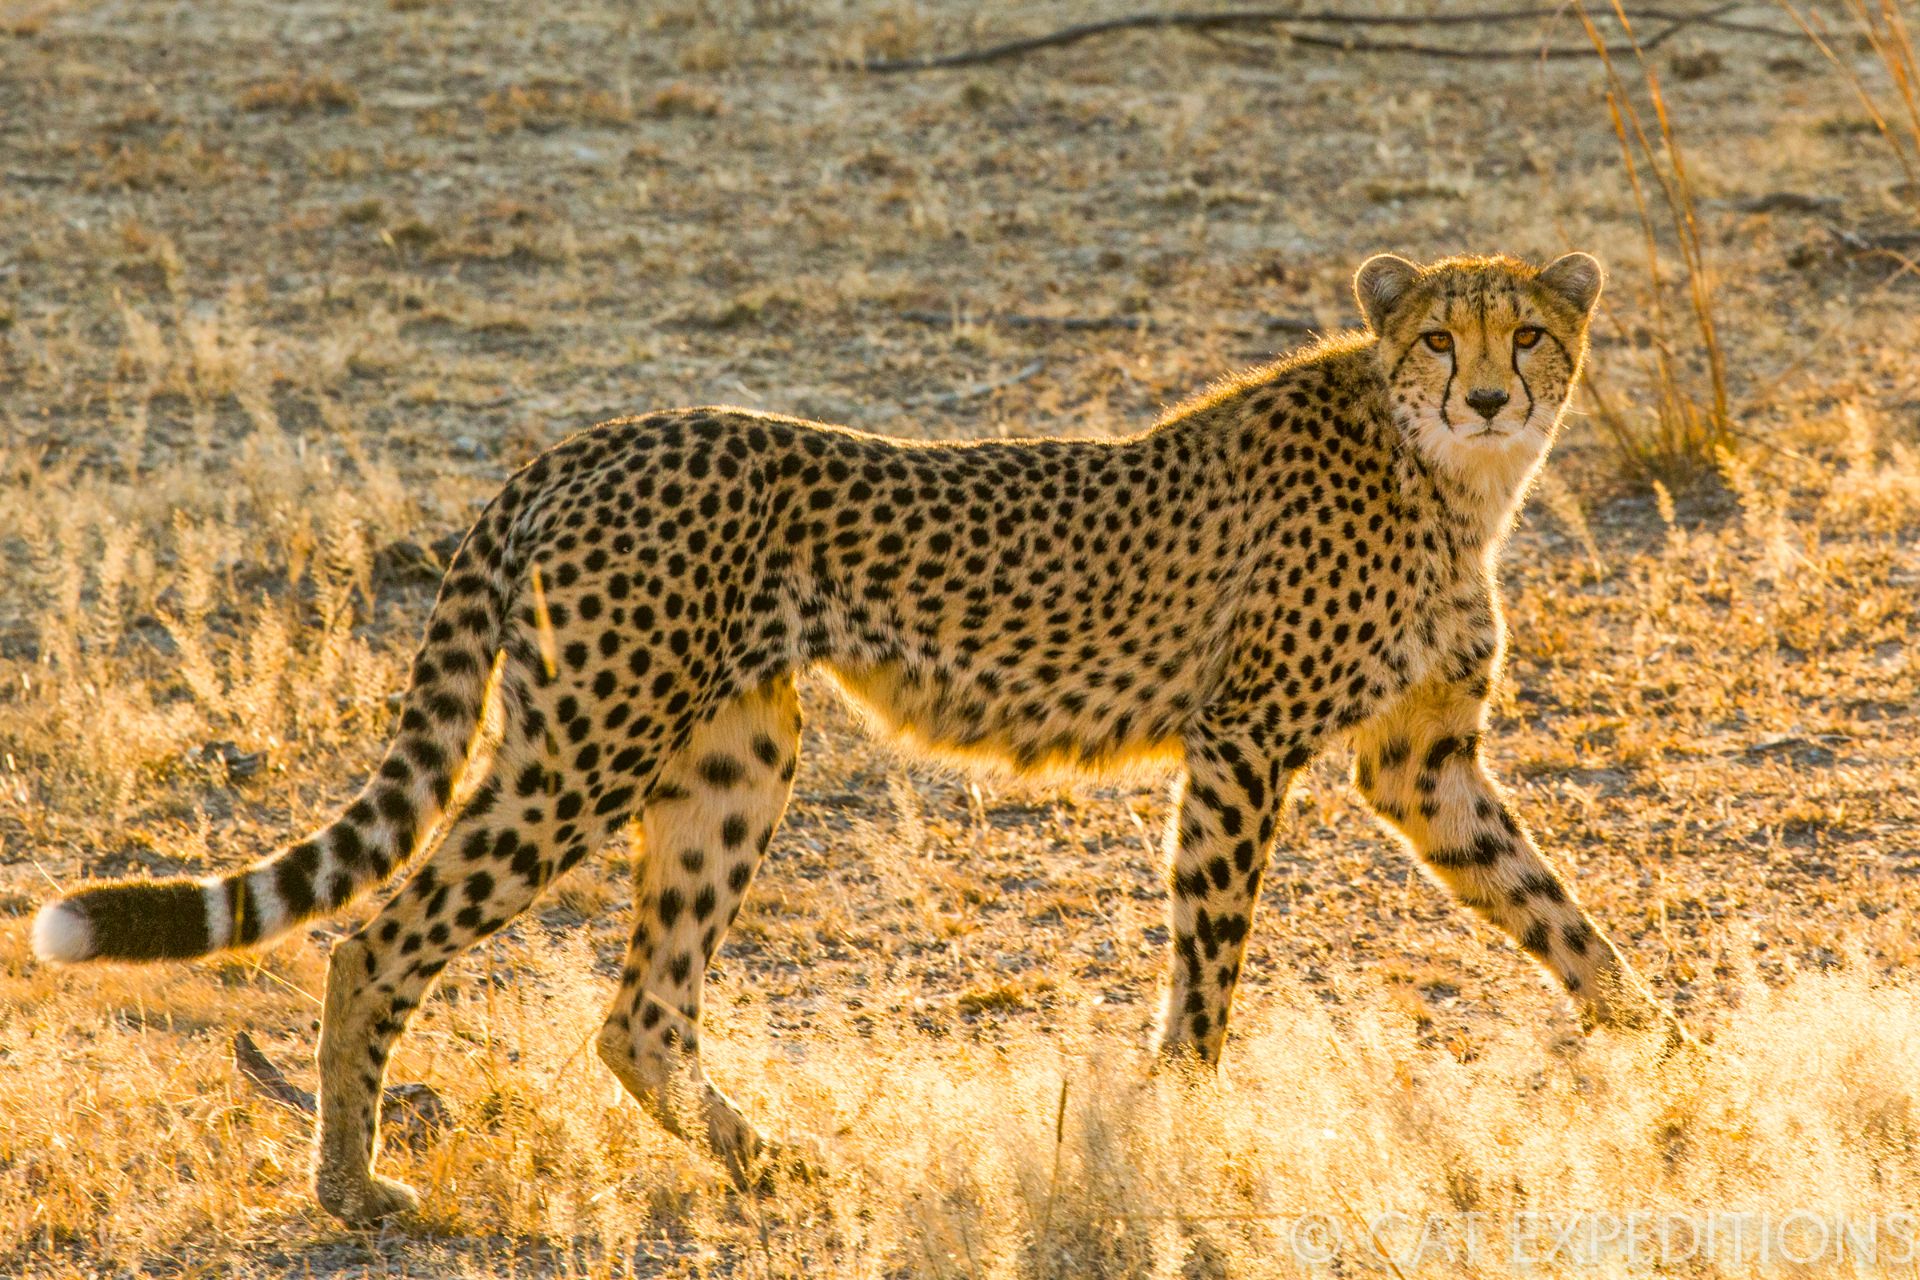 Cheetah female at sunrise